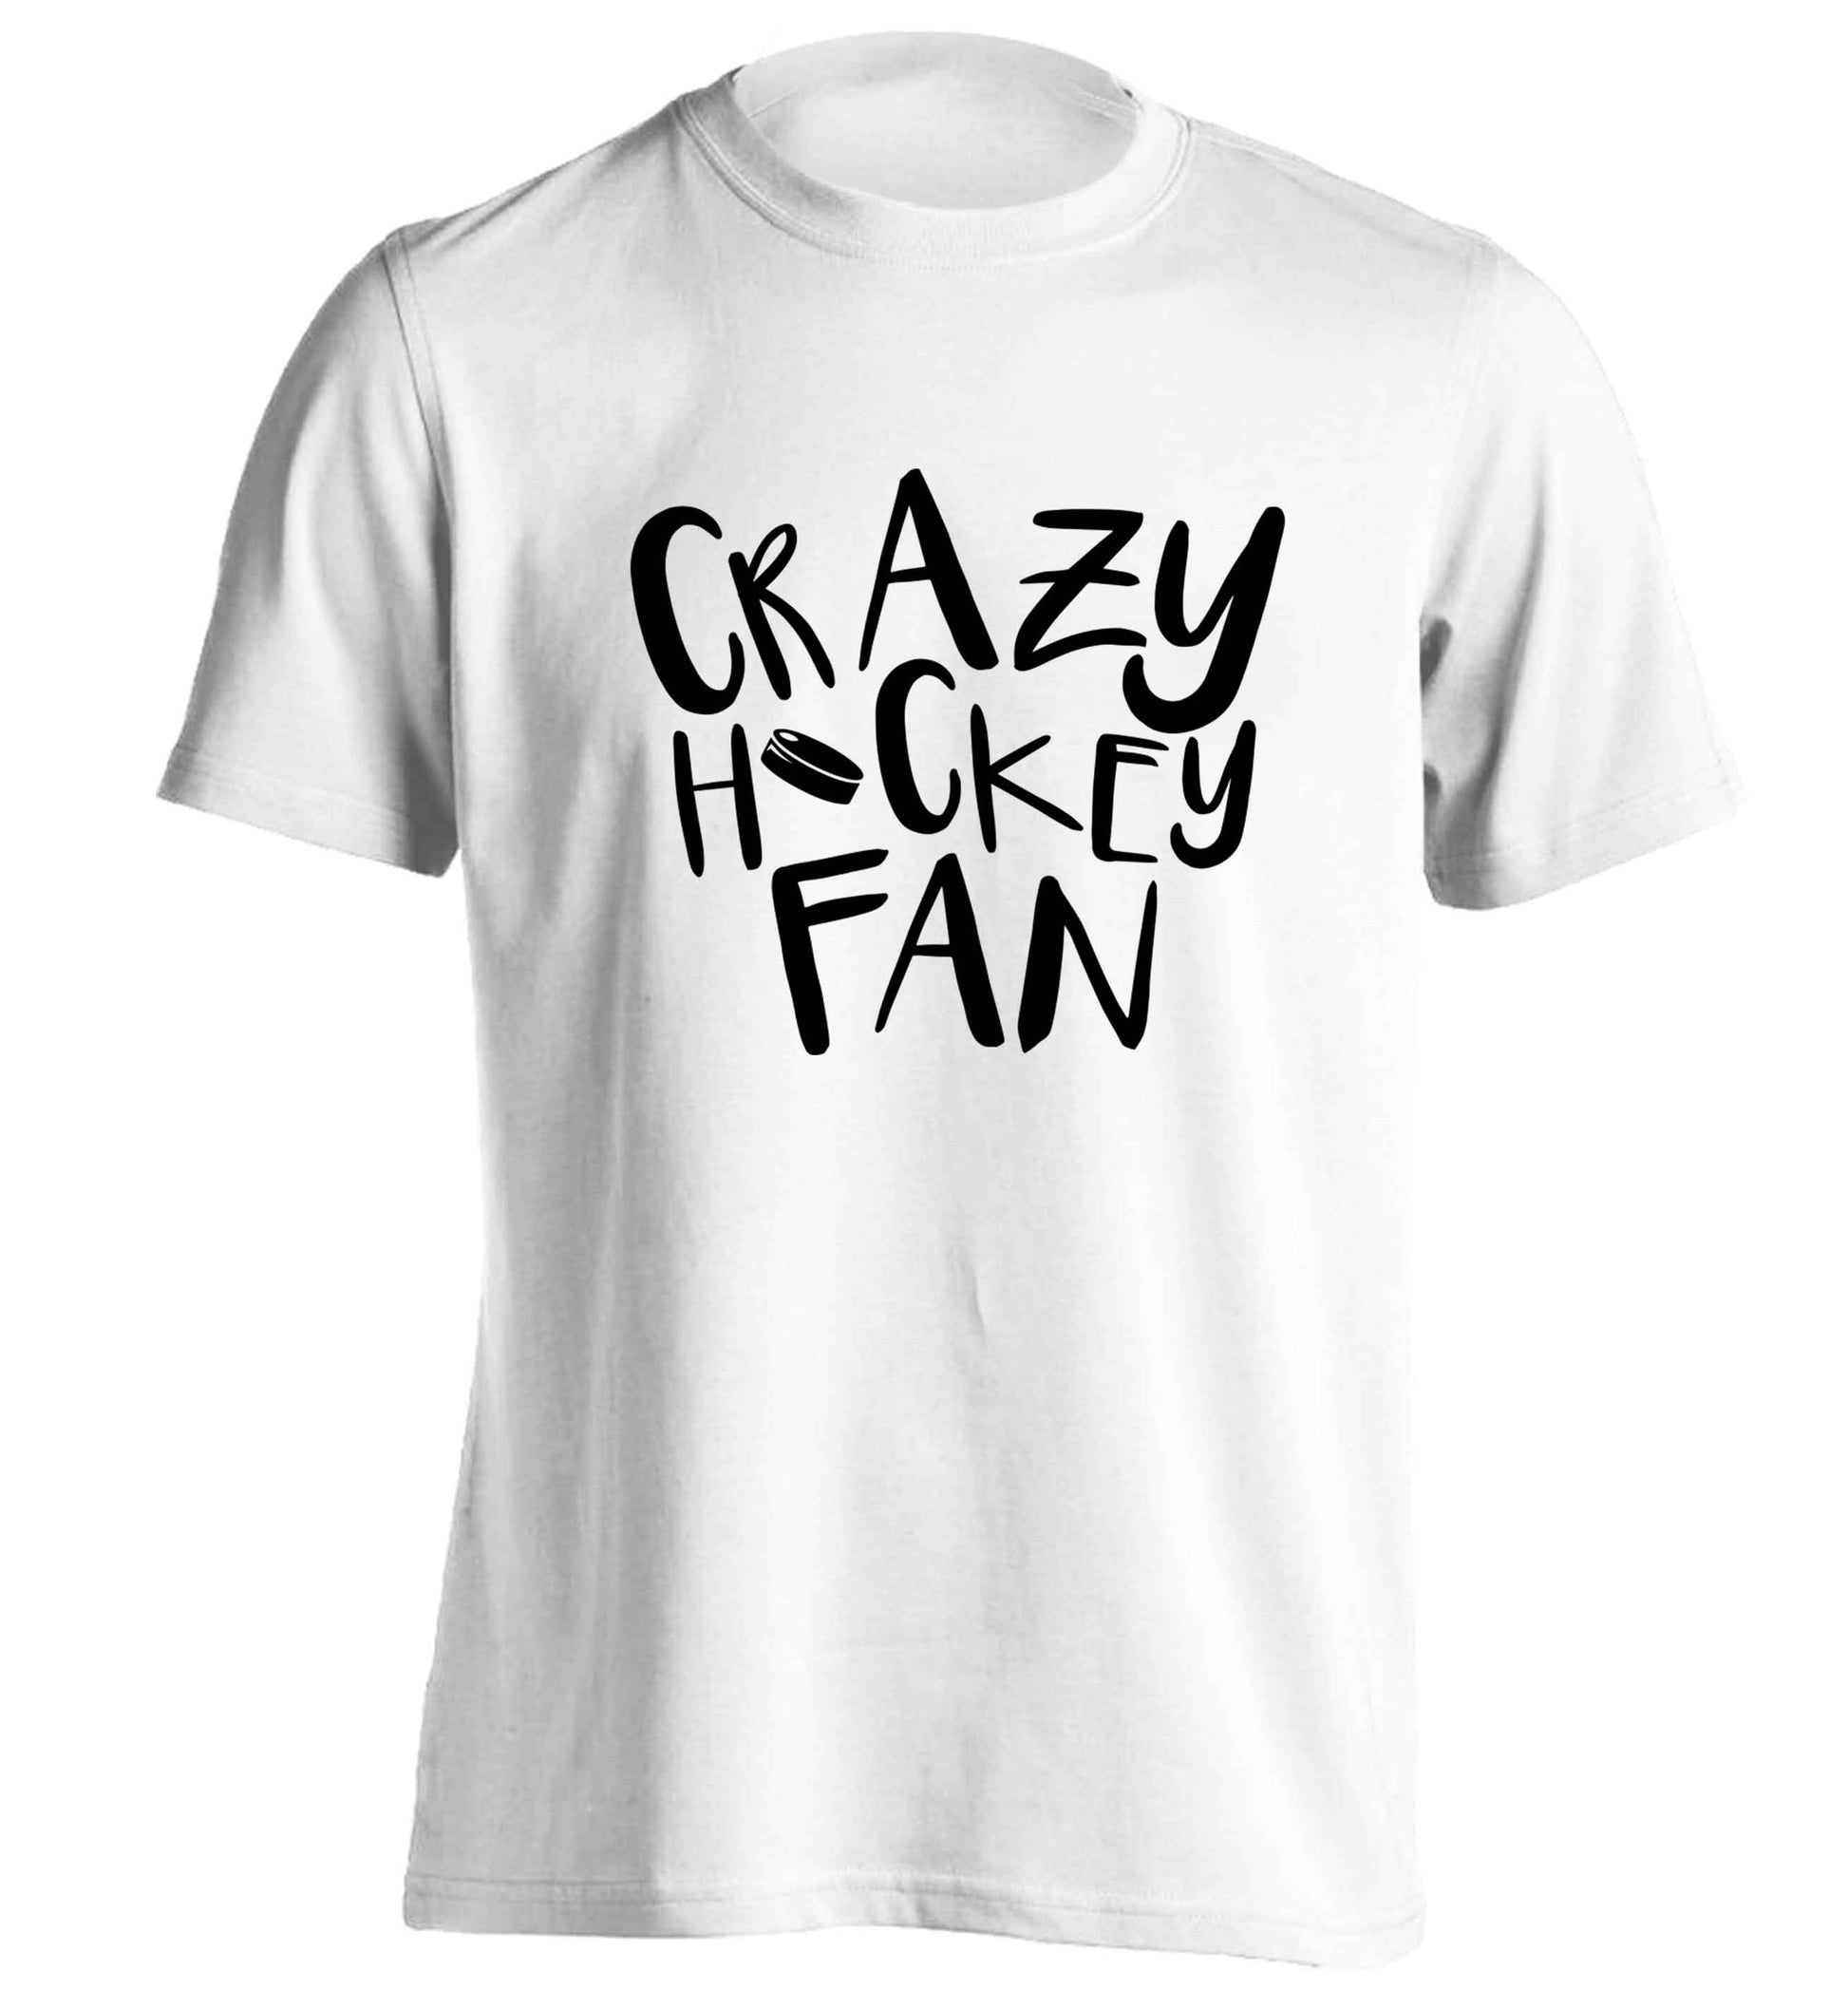 Crazy hockey fan adults unisex white Tshirt 2XL